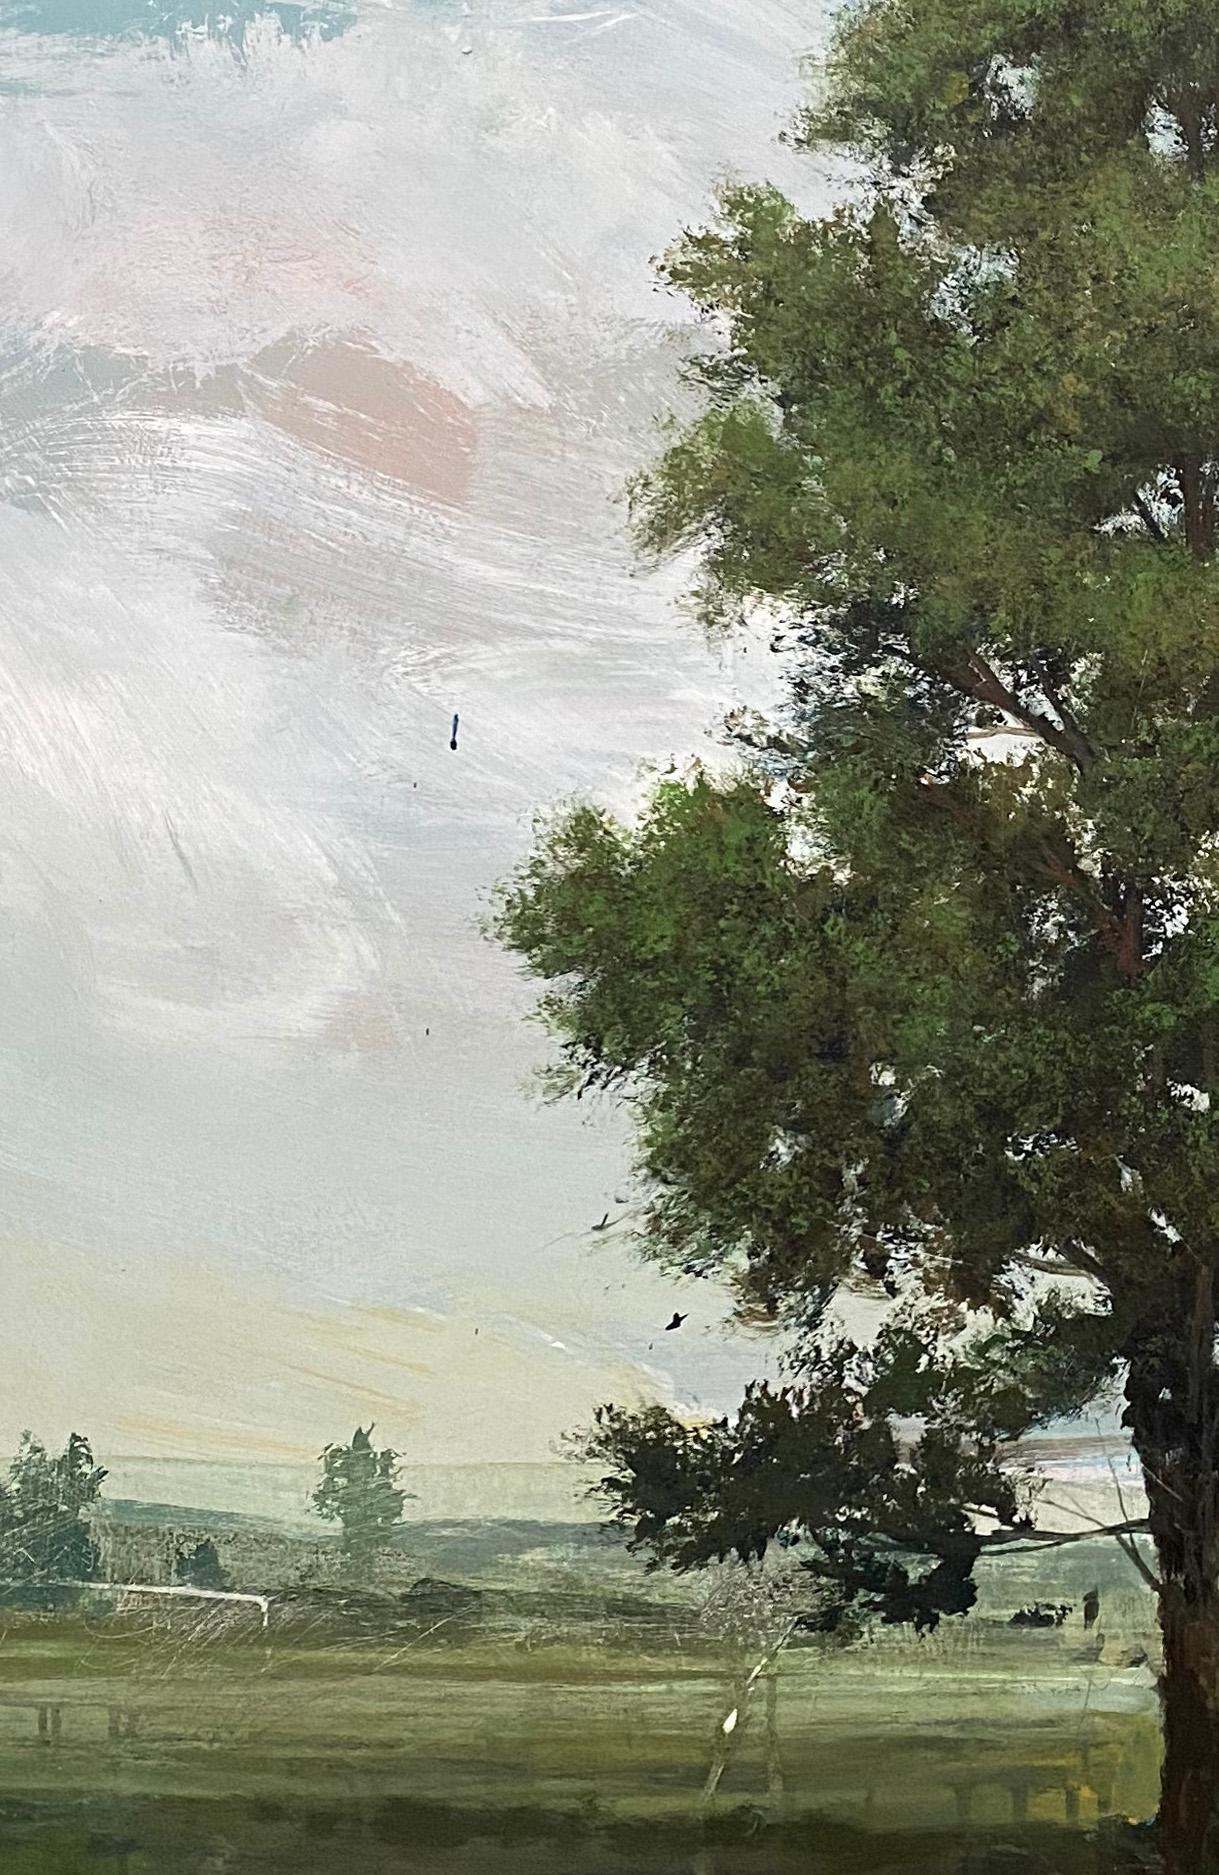 L'artiste canadien Peter Hoffer (1965) est surtout connu pour ses peintures de paysages. Son style a également été comparé aux paysages idéalistes du paysagiste du XIXe siècle John Constable.

Après un voyage à Paris, Hoffer a commencé à